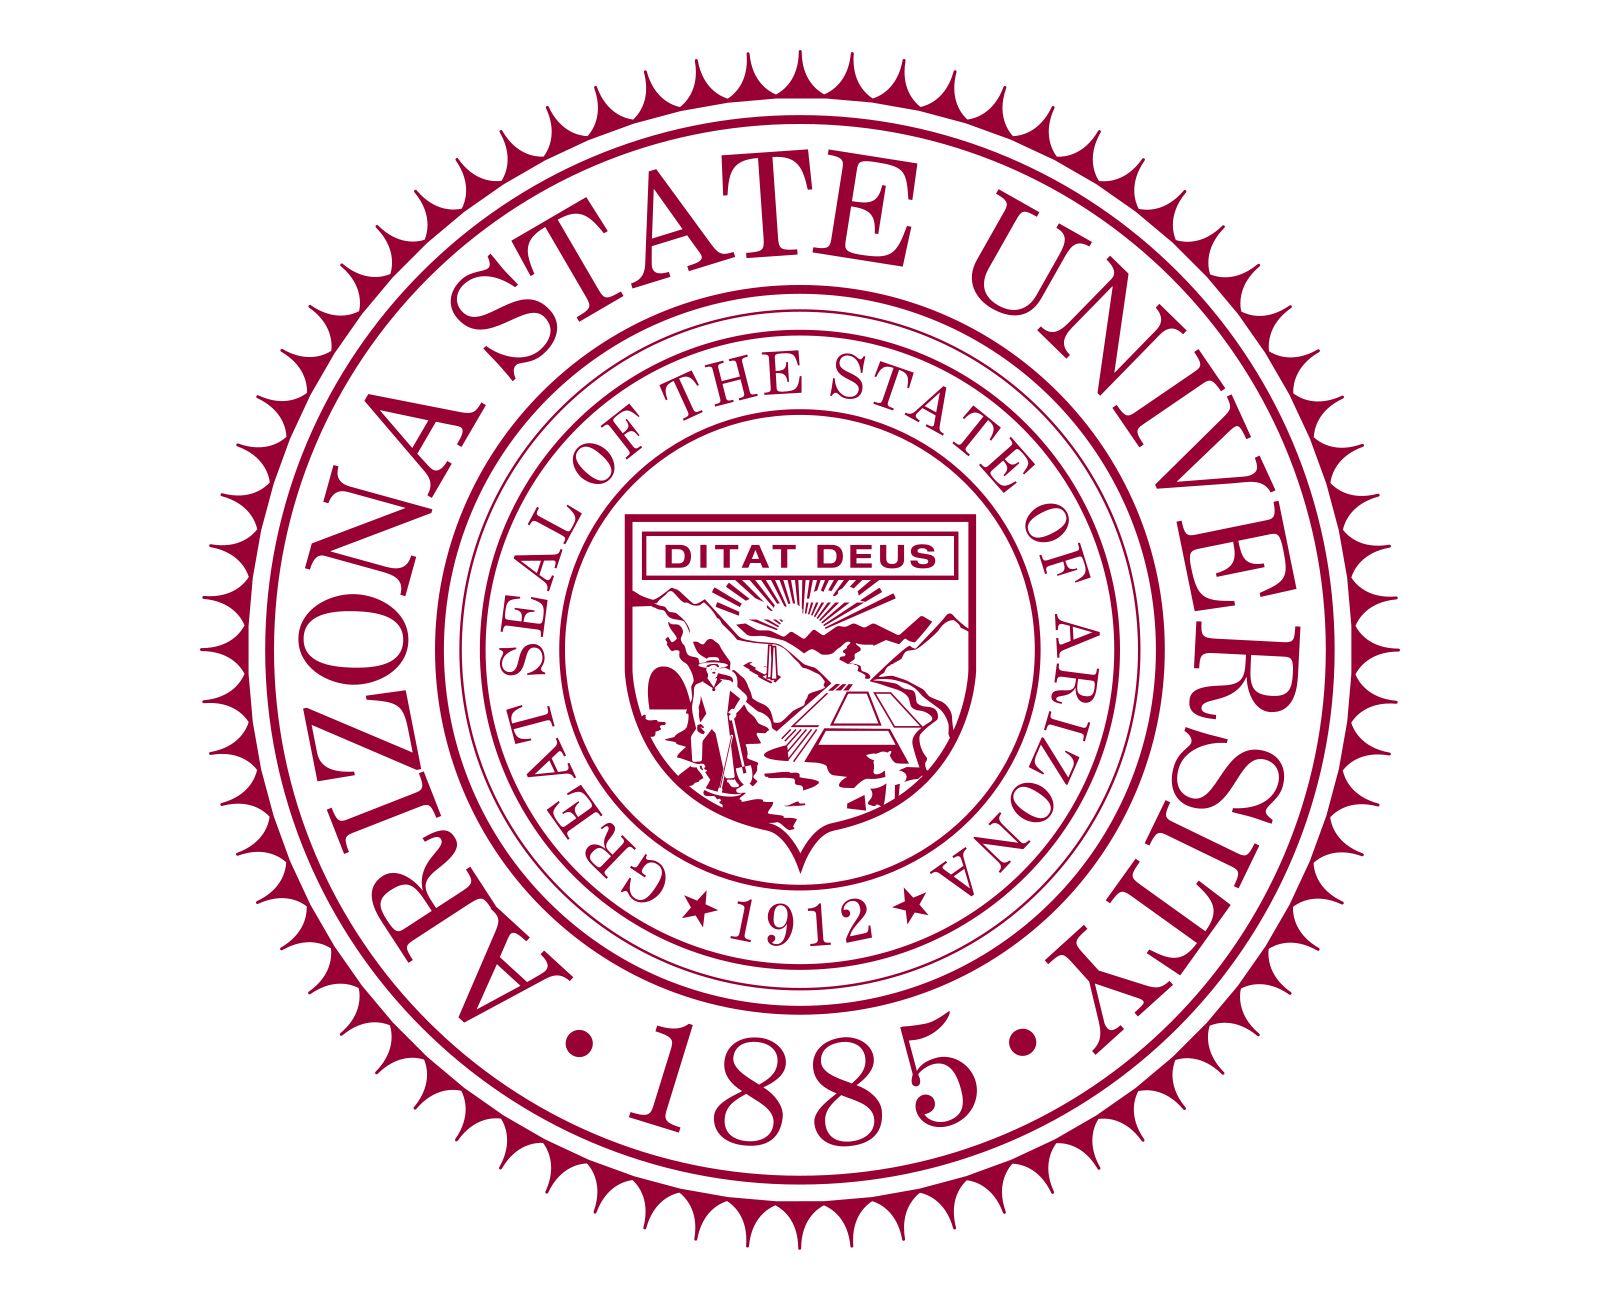 ASU Logo - ASU Logo, Arizona State University symbol, meaning